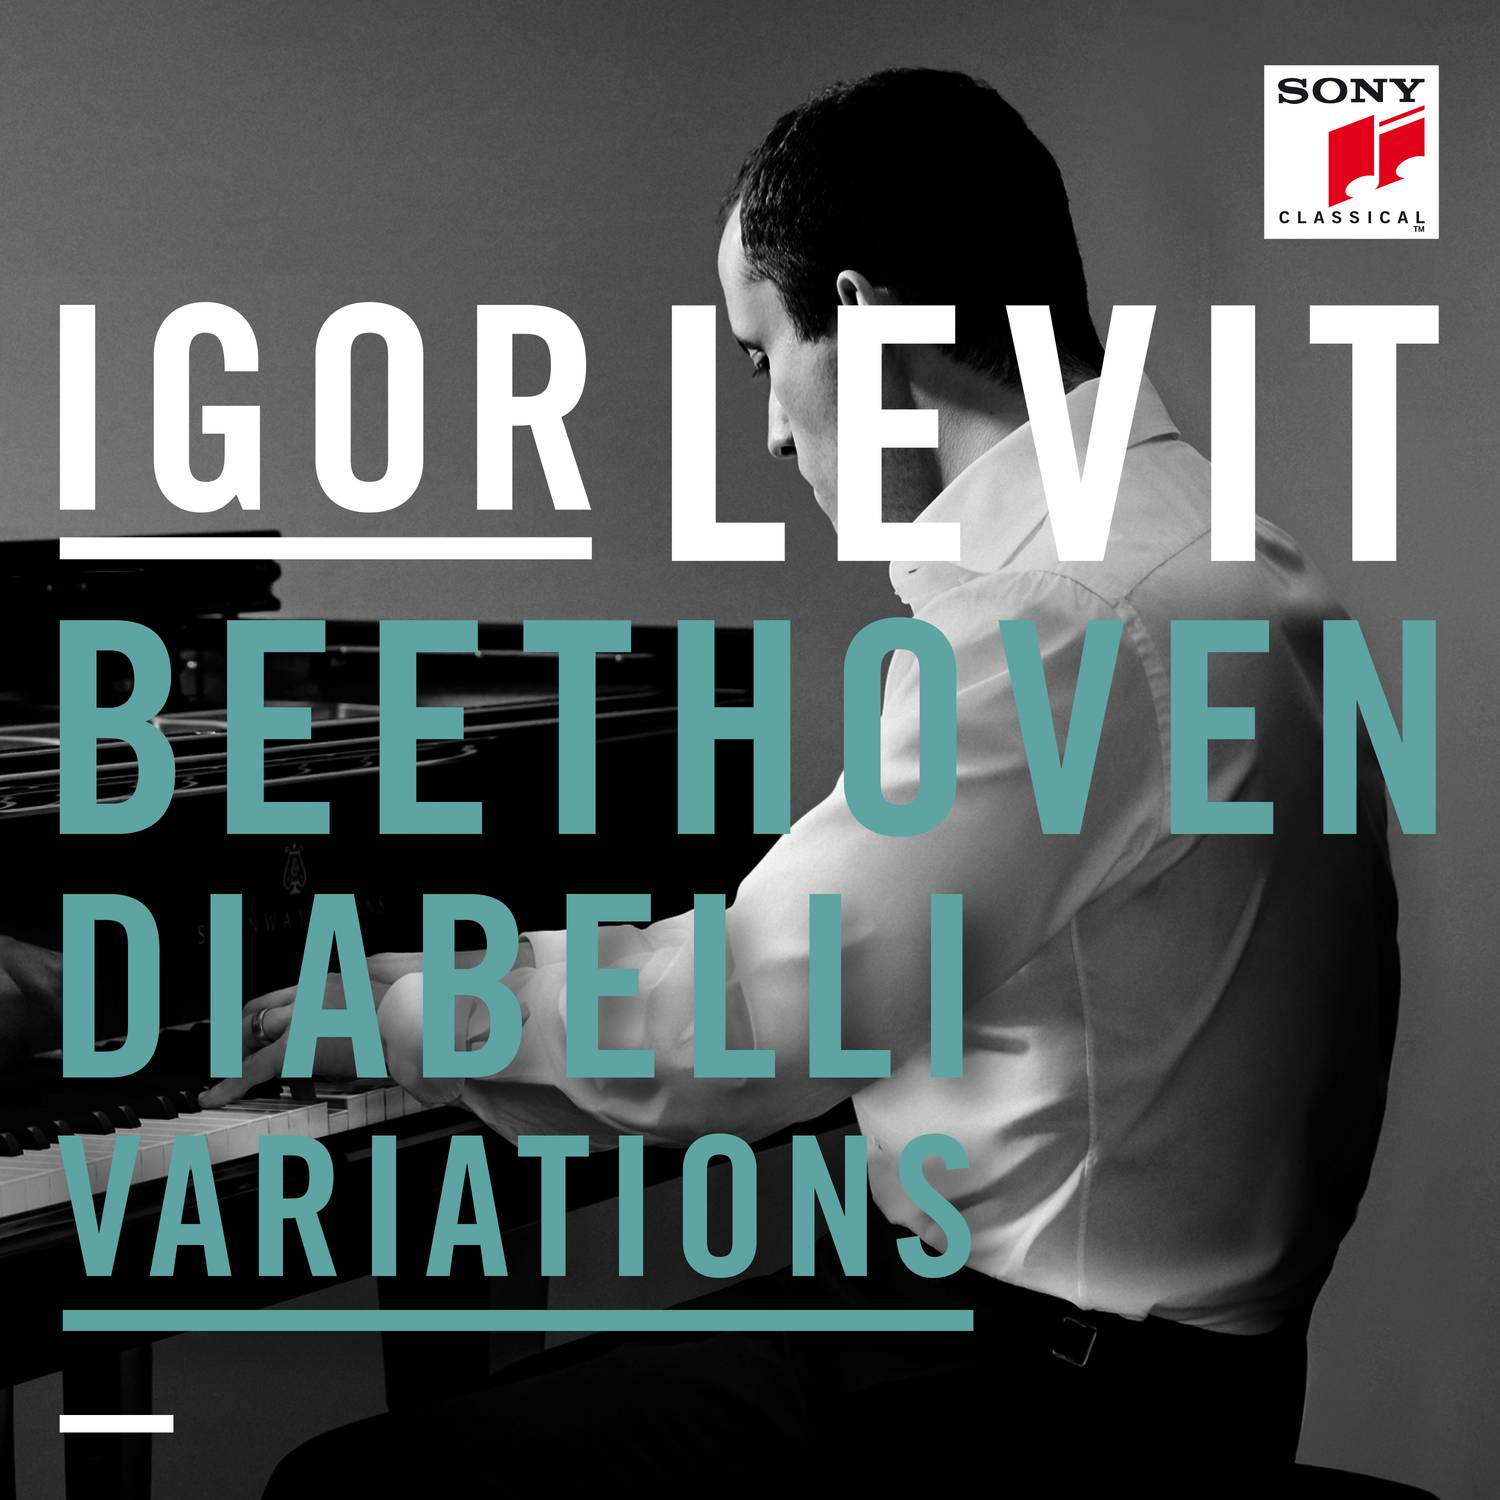 Diabelli Variations - 33 Variations on a Waltz by Anton Diabelli, Op. 120:Var. 8 - Piu vivace